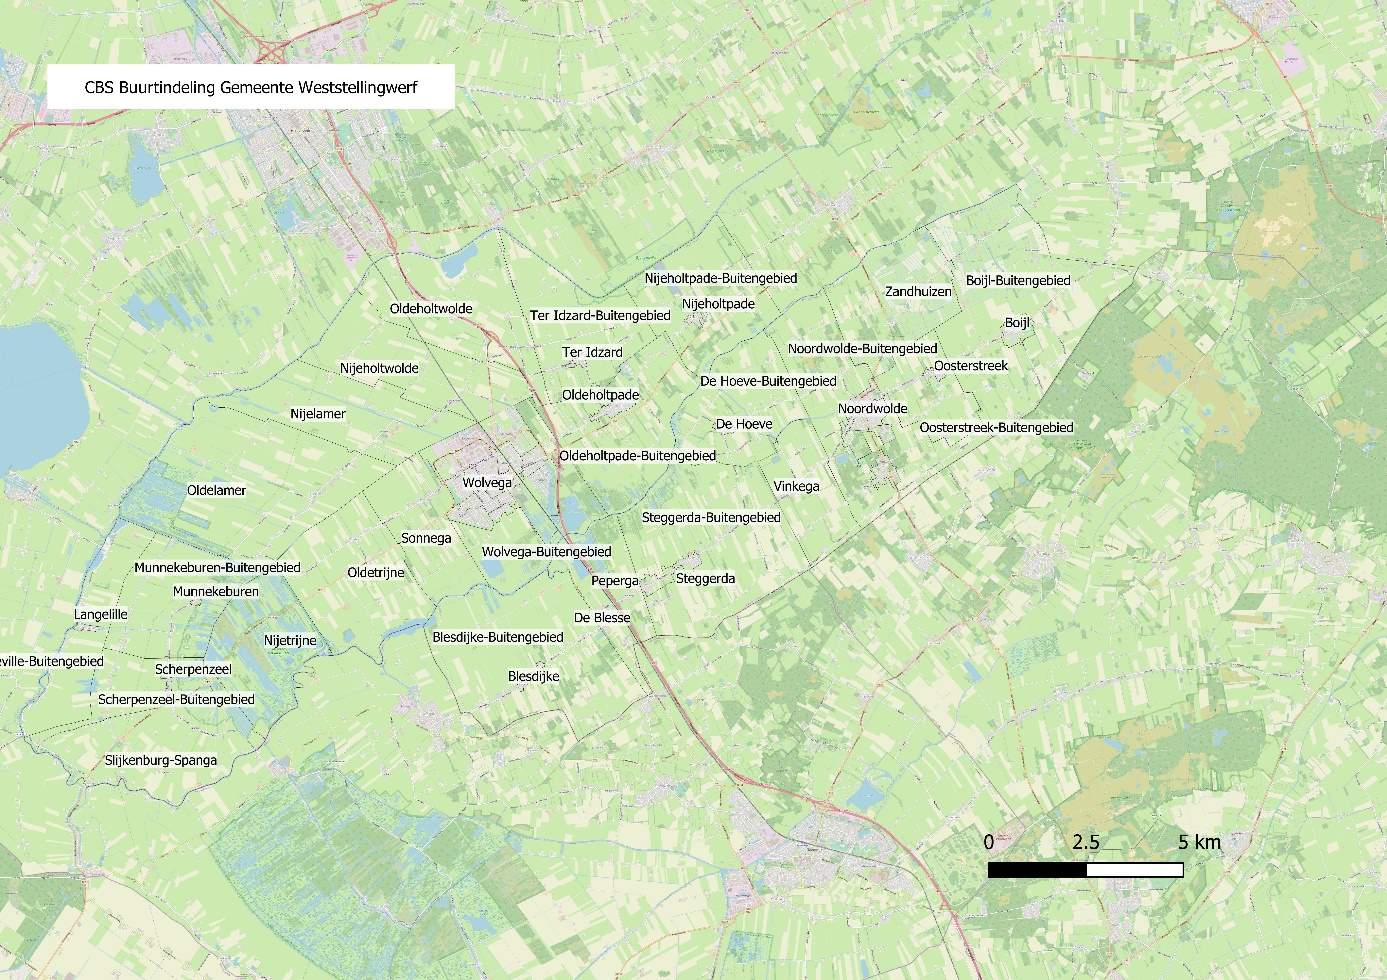 CBS-buurtindeling van de gemeente Weststellingwerf. Voor de buurtindeling van Wolvega en Noordwolde zijn specifieke kaarten opgenomen.